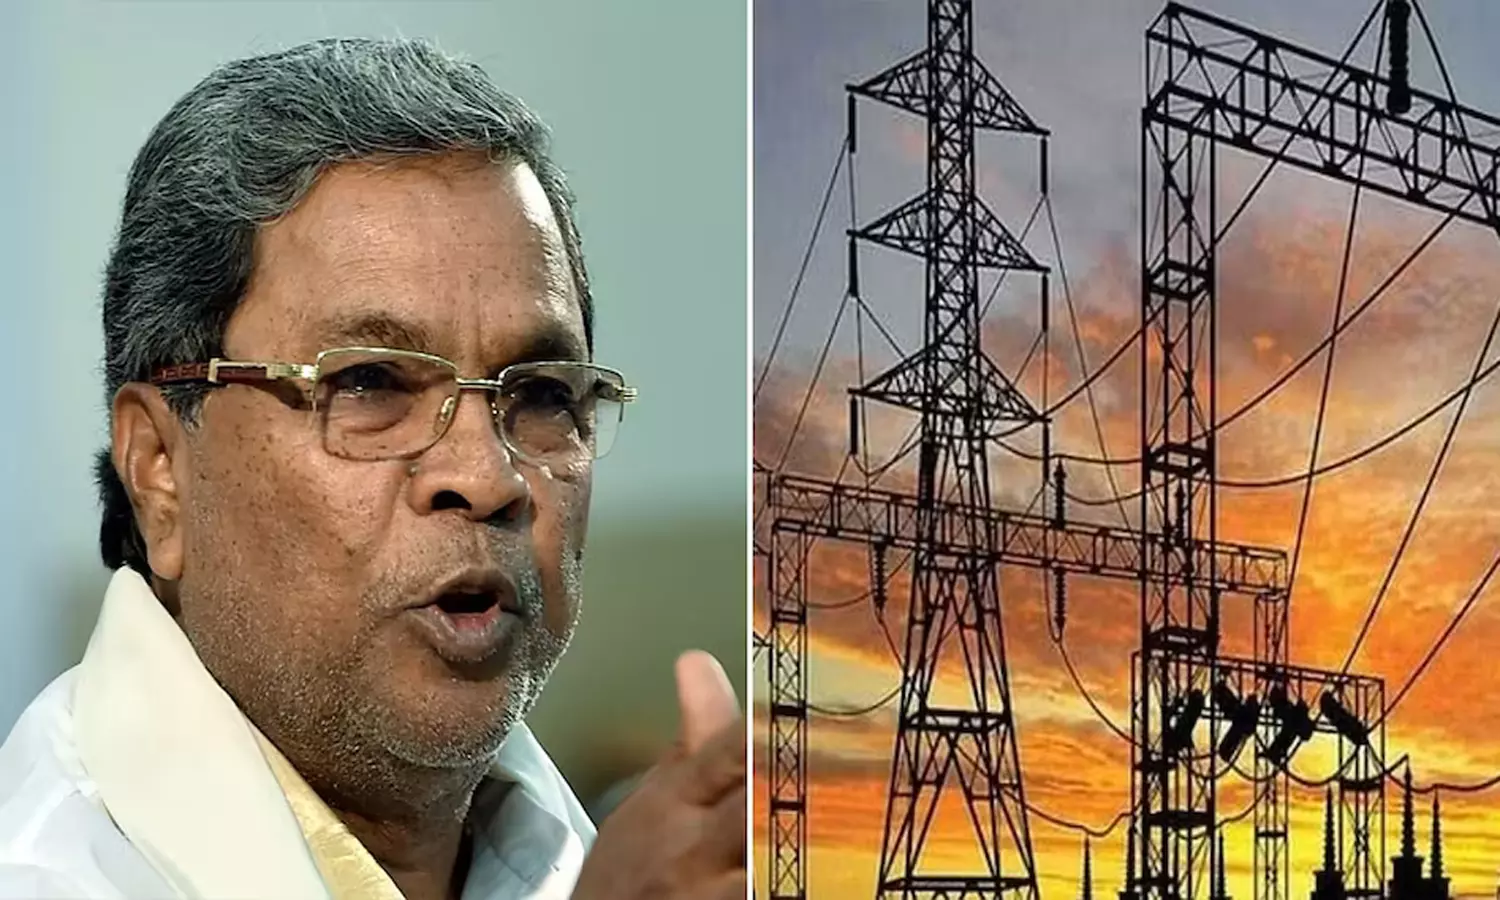 200 யூனிட் இலவச மின்சாரத்திற்கு இன்று முதல் விண்ணப்பிக்கலாம்: கர்நாடக அரசு  | Public apply 200 units of free electricity from today Karnataka Govt